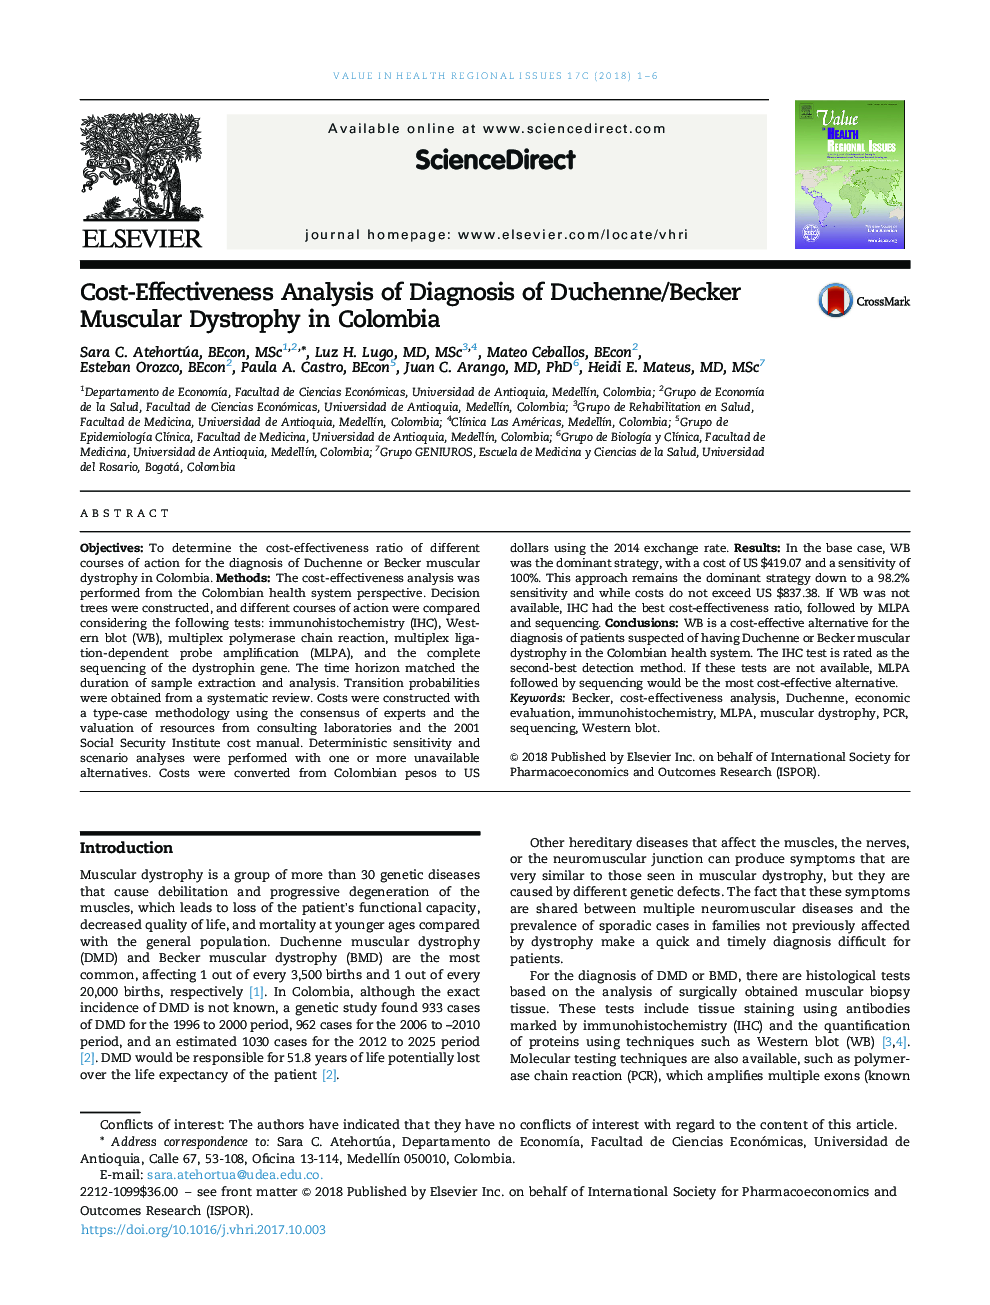 تجزیه و تحلیل هزینه-اثربخشی تشخیص دیستروفی عضلانی دوشن / بکر در کلمبیا 